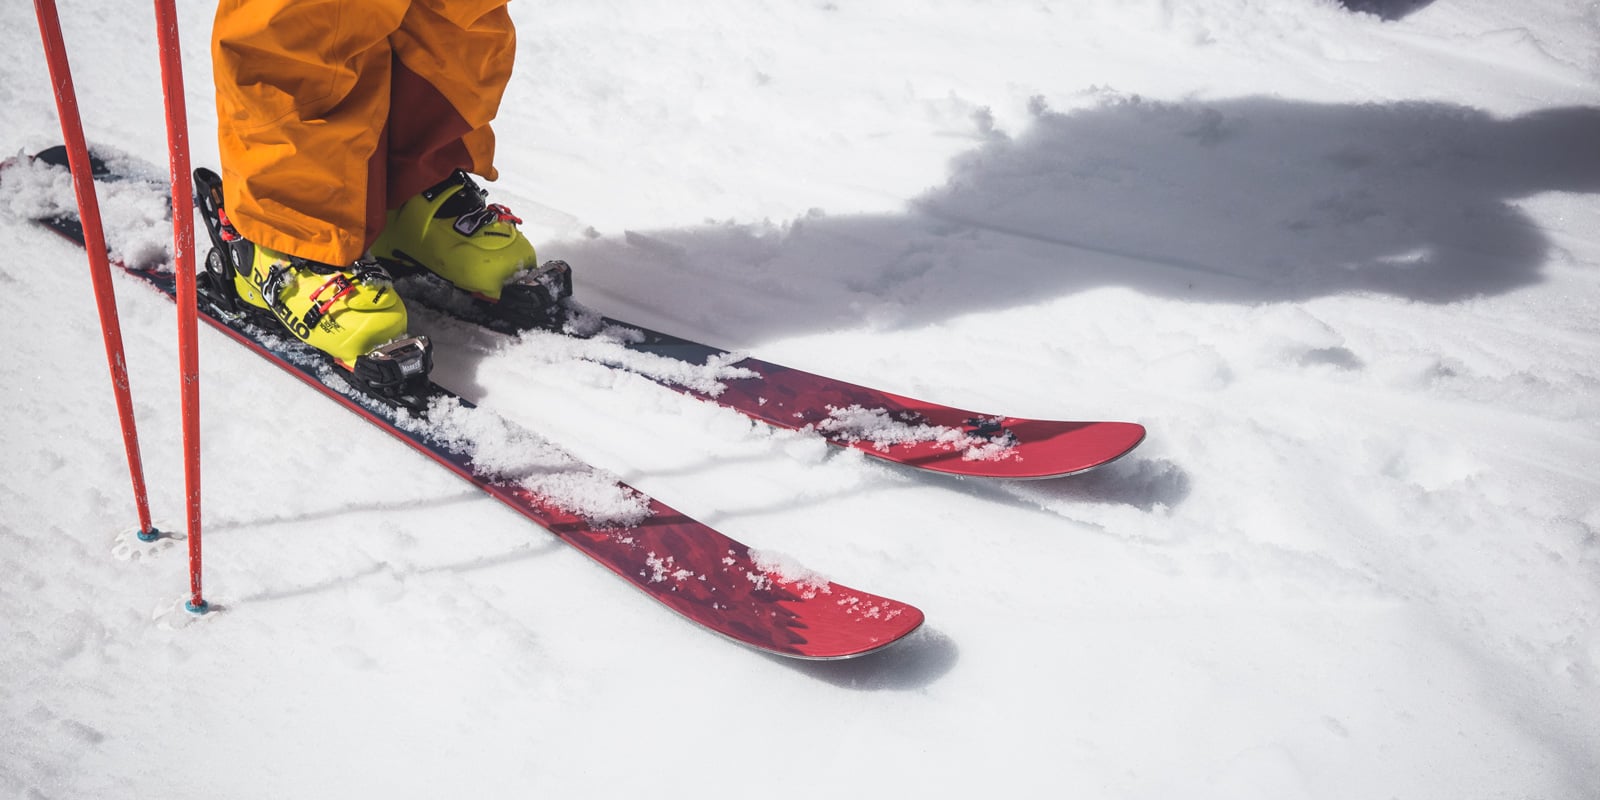 How to Choose Ski Equipment for Children?